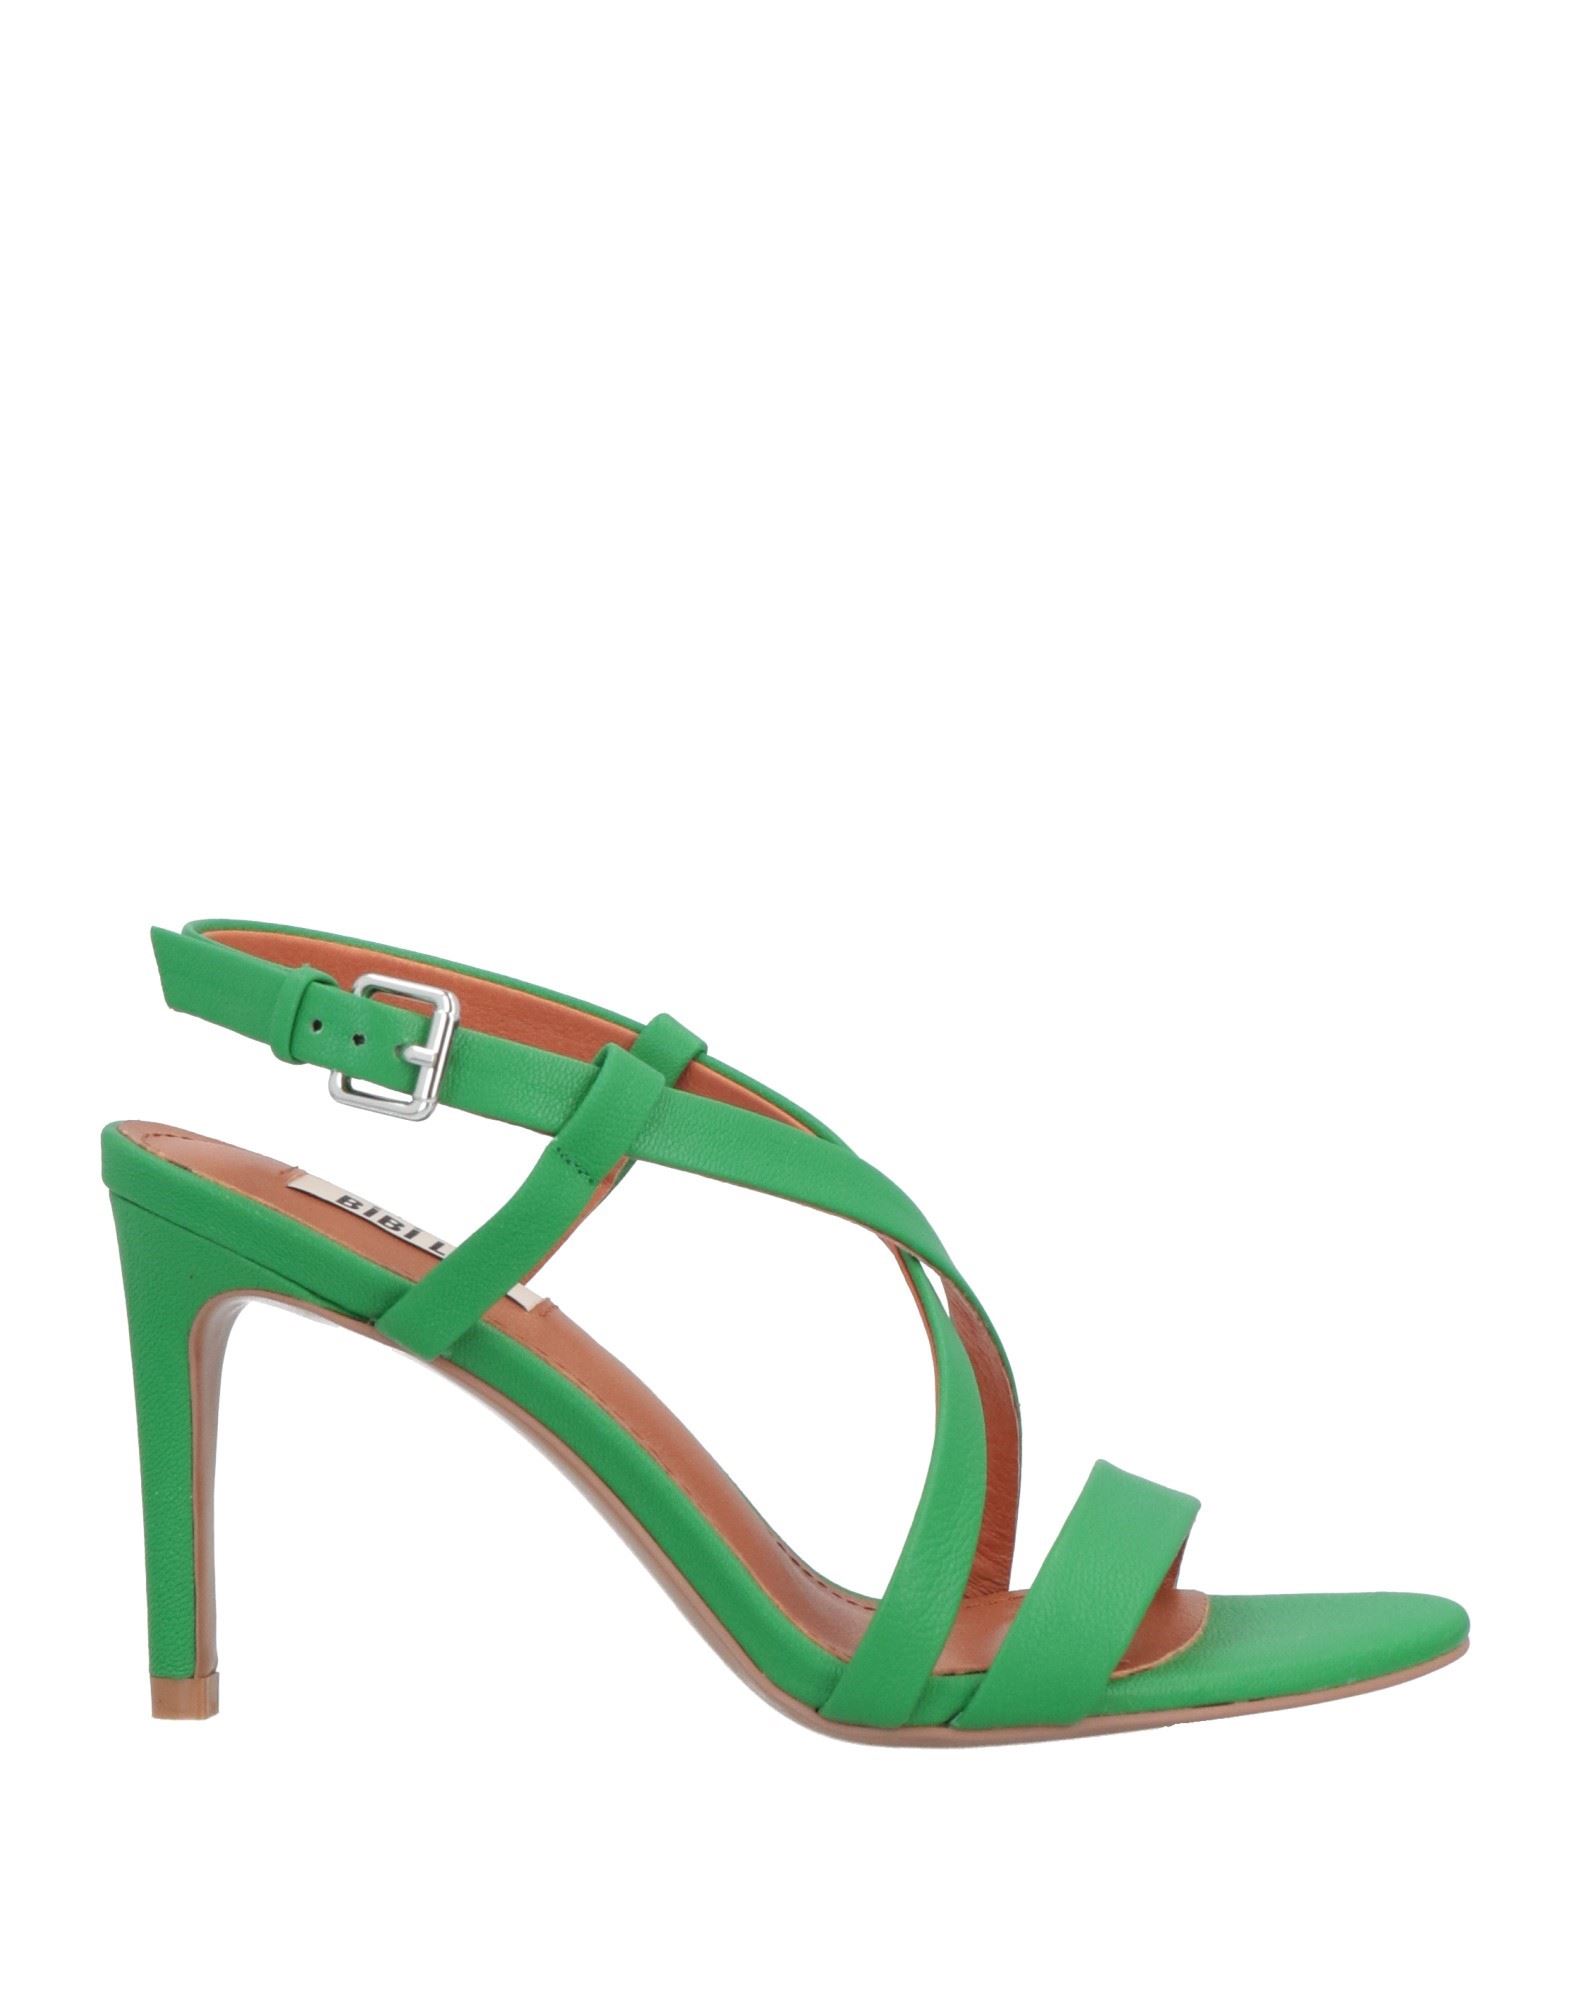 Bibi Lou Sandals In Emerald Green